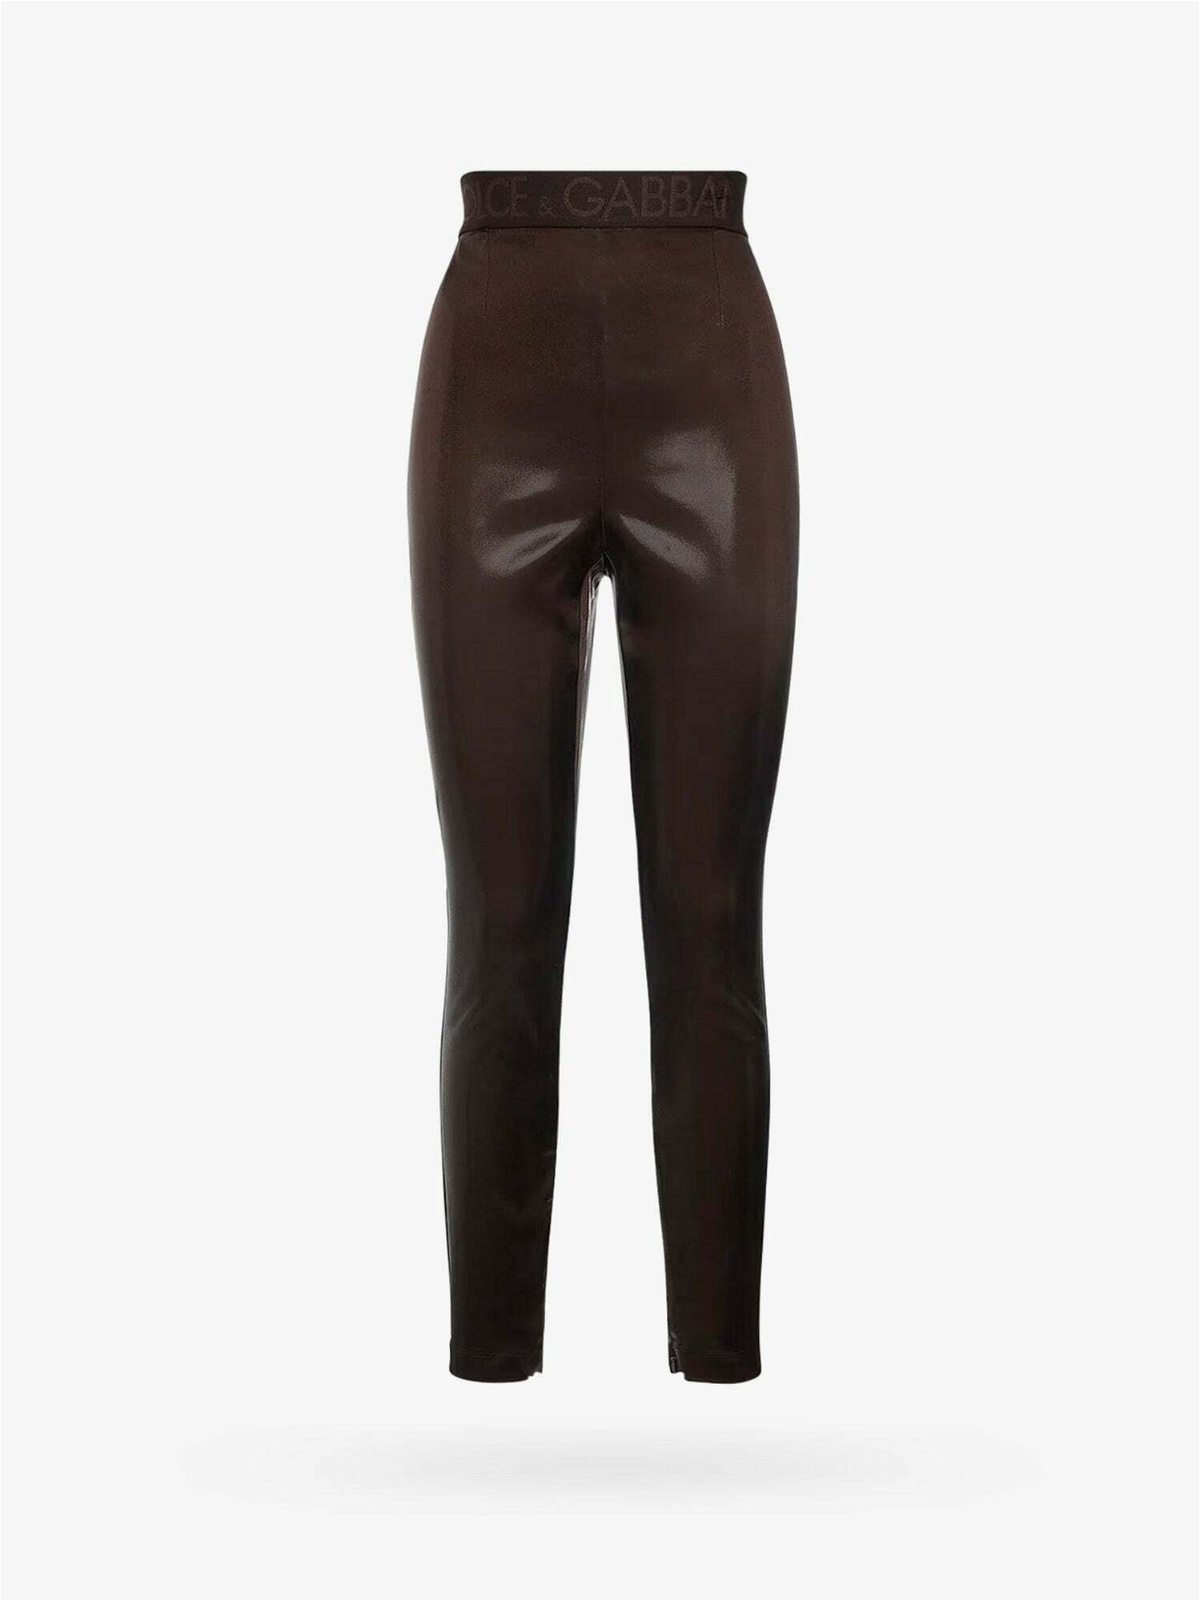 Dolce & Gabbana leggings for women's